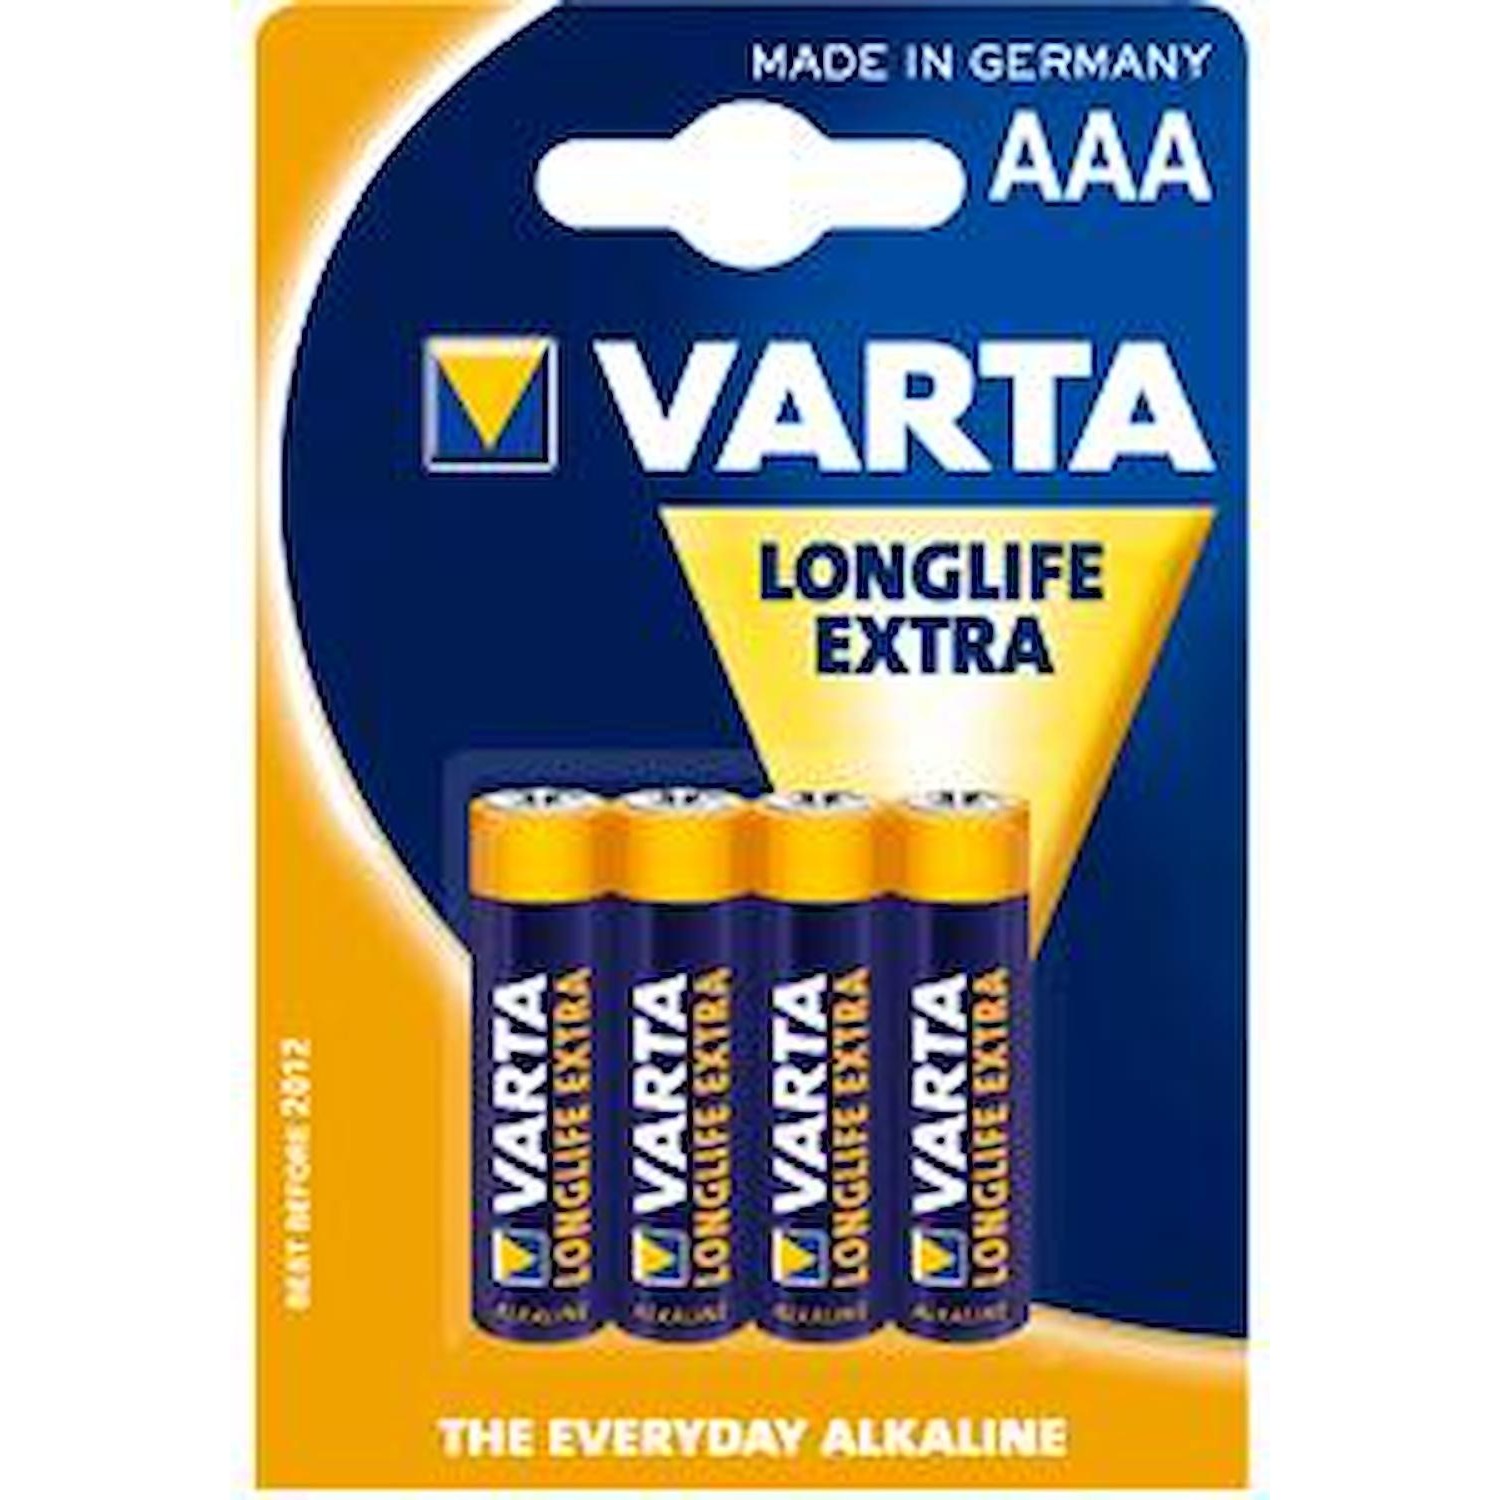 Immagine per Batteria pila ministilo alcalina Varta long extra AAA confezione 4 pezzi da DIMOStore